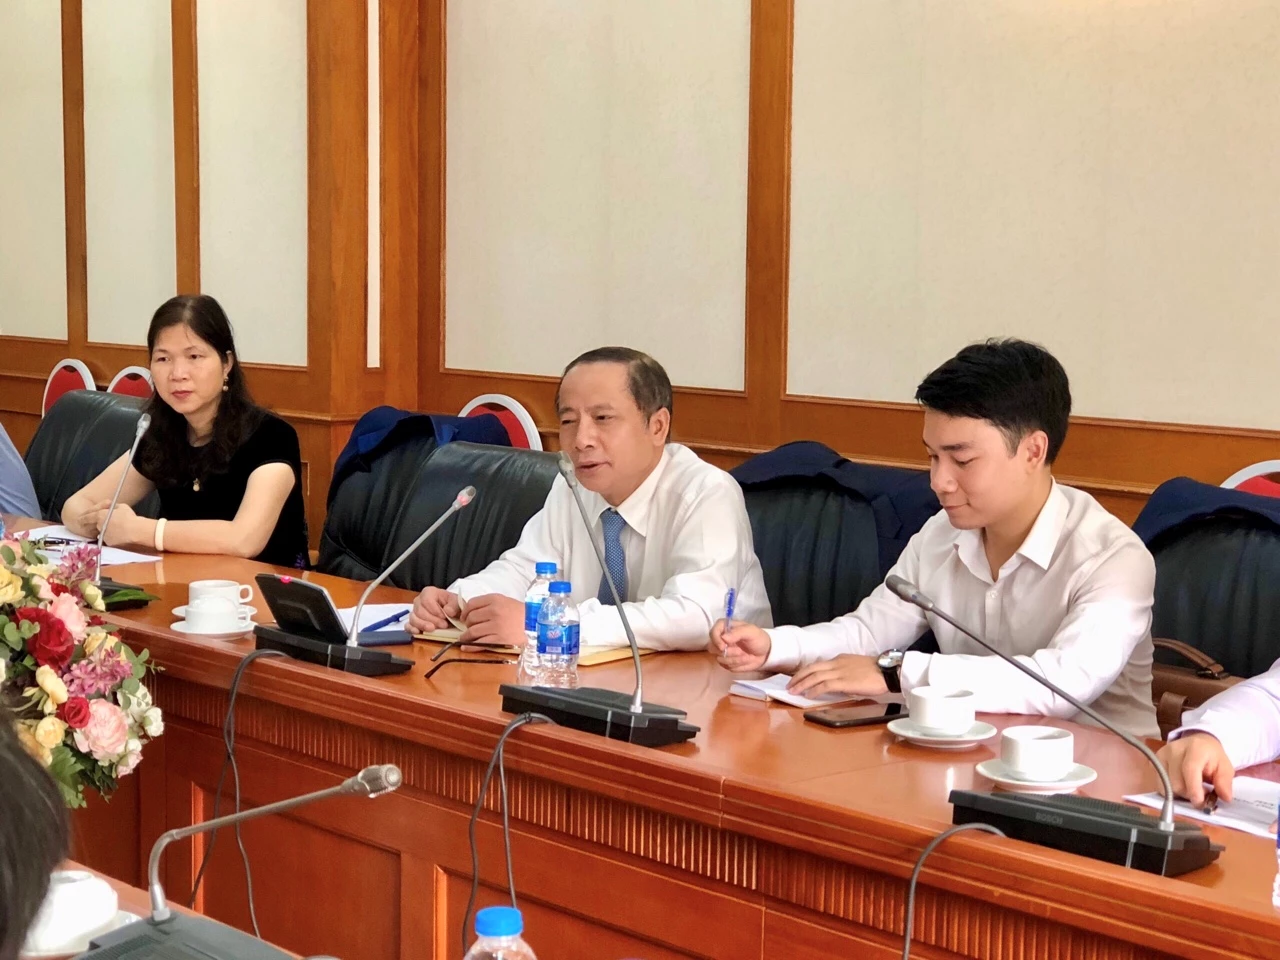 Chủ tịch Nguyễn Văn Thân đánh giá rất cao sự đổi mới của Bộ KH&CN. Ảnh: Hoàng Lân.